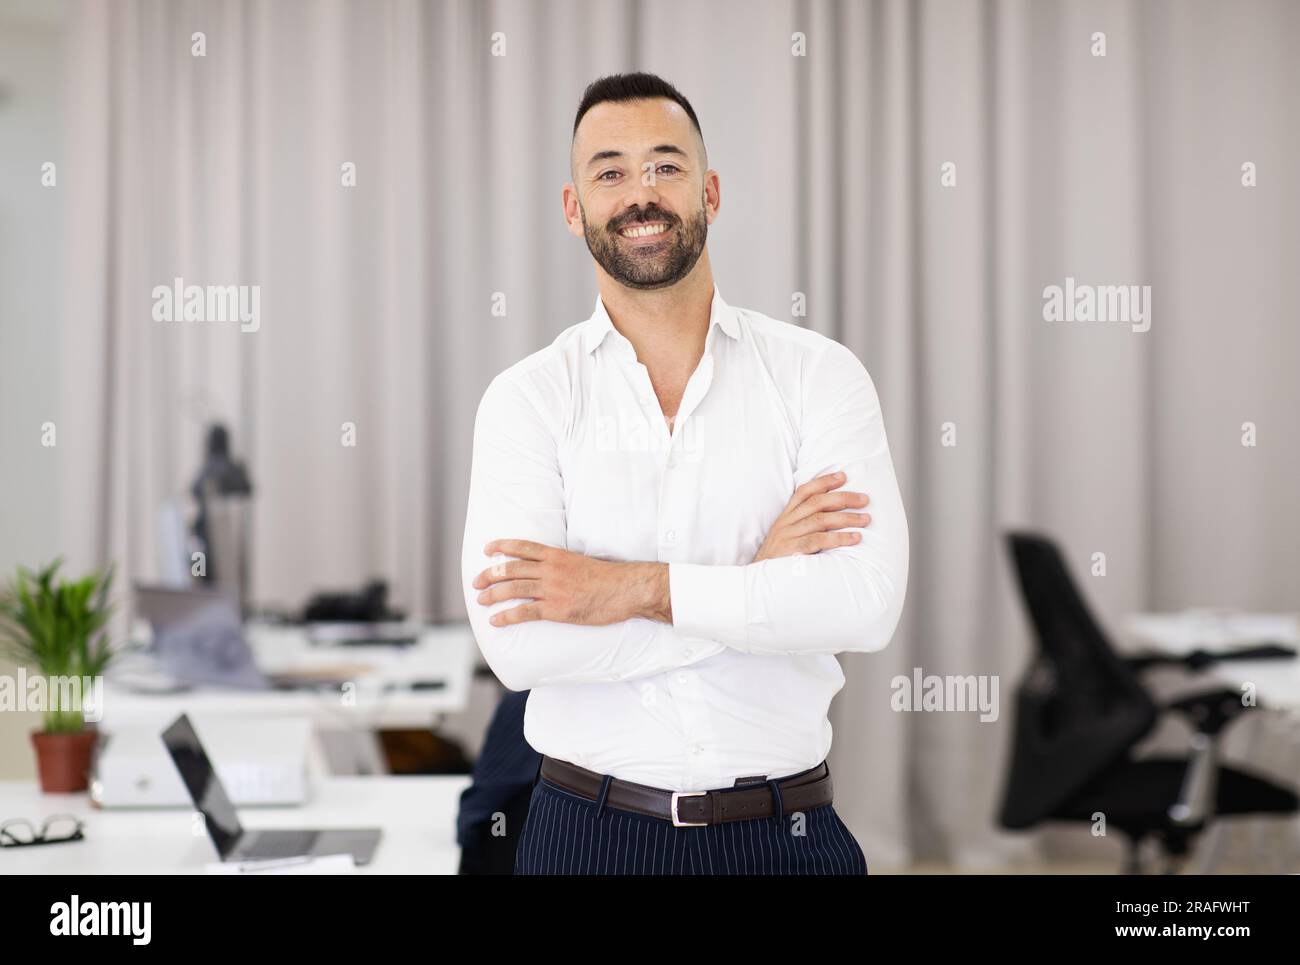 Allegro sicuro adulto europeo attraente uomo in camicia bianca con barba e braccia incrociate sul petto Foto Stock